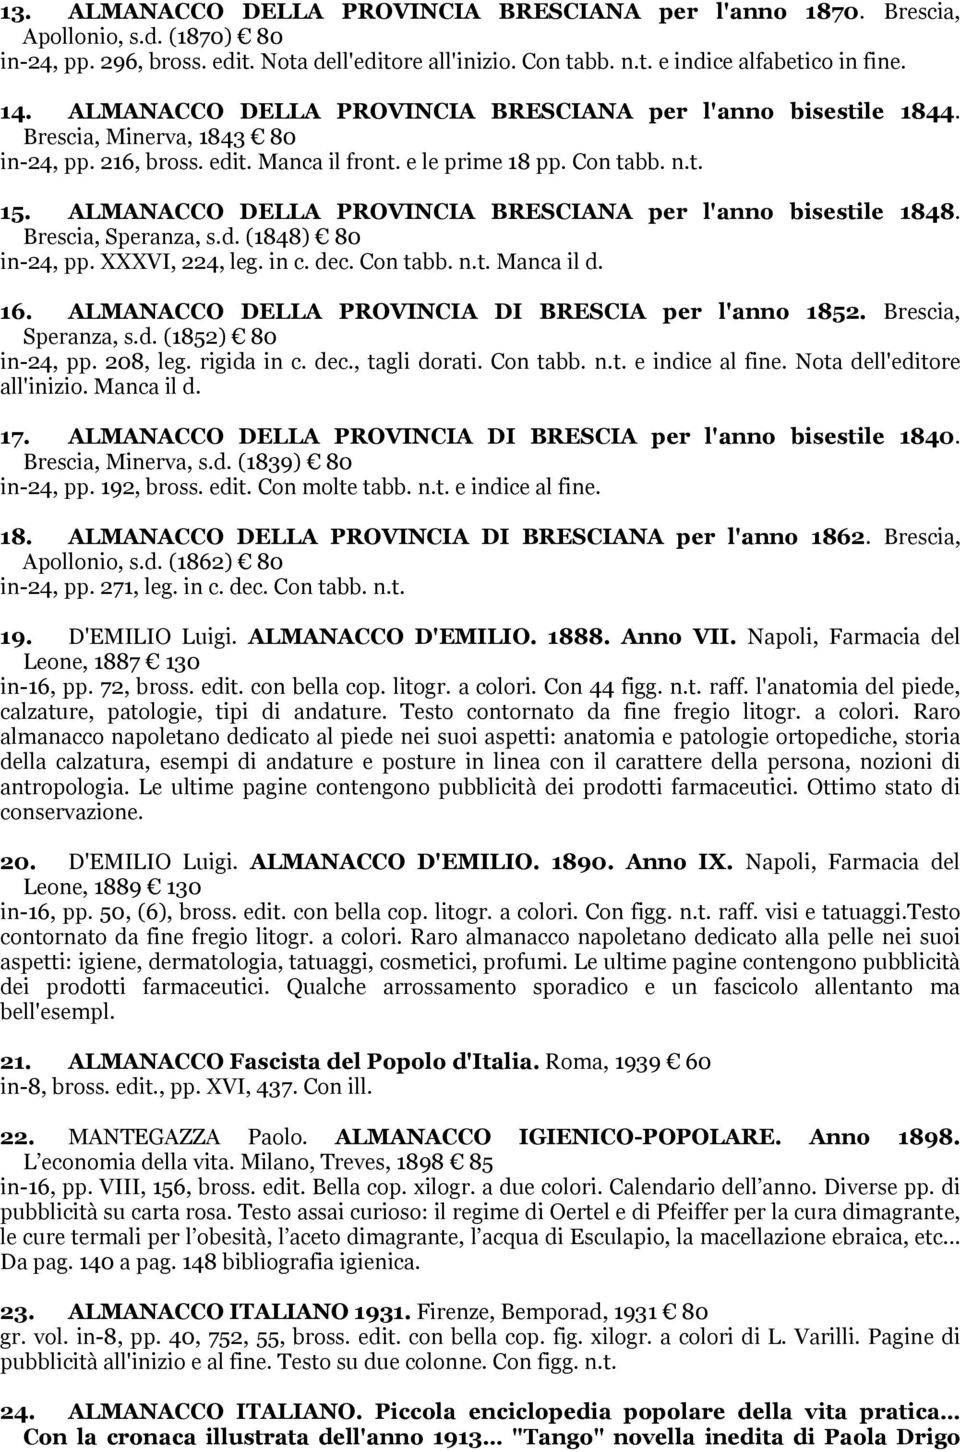 ALMANACCO DELLA PROVINCIA BRESCIANA per l'anno bisestile 1848. Brescia, Speranza, s.d. (1848) 80 in-24, pp. XXXVI, 224, leg. in c. dec. Con tabb. n.t. Manca il d. 16.